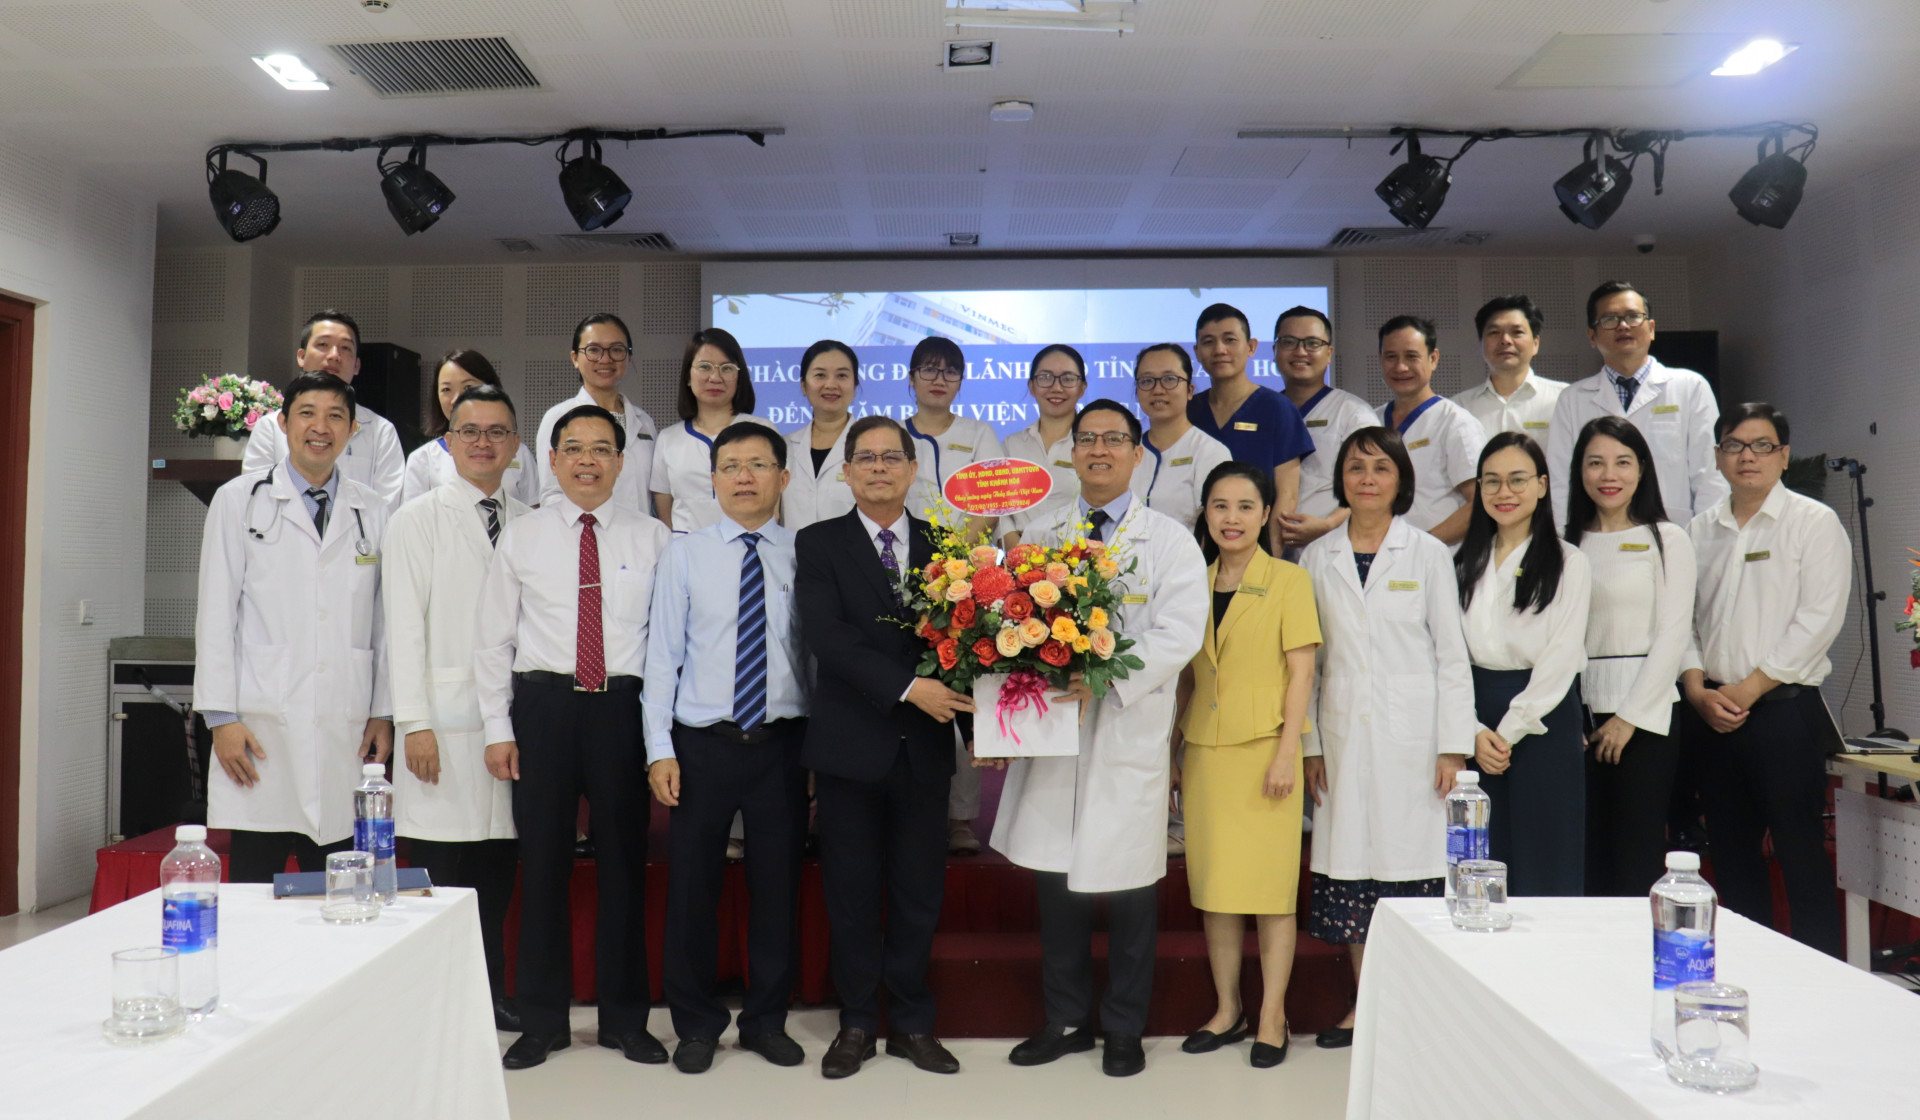 Đồng chí Nguyễn Tấn Tuân thăm và chúc mừng đội ngũ y, bác sĩ Bệnh viện Đa khoa Vinmec Nha Trang